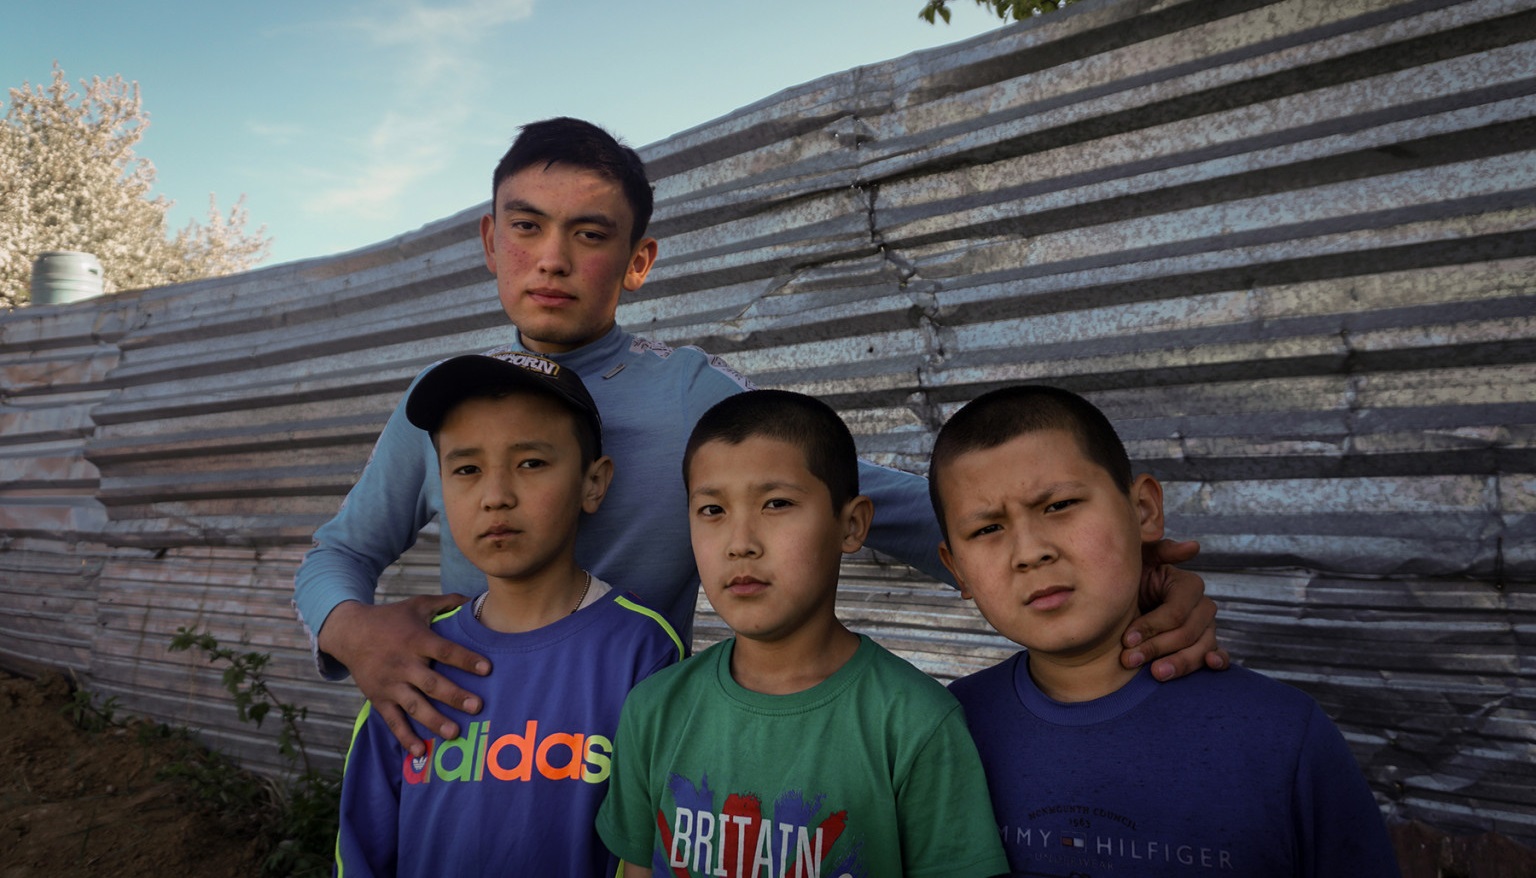 Çin'in Uygur ailelerinden aldığı çocukların tutulduğu okullar görüntülendi